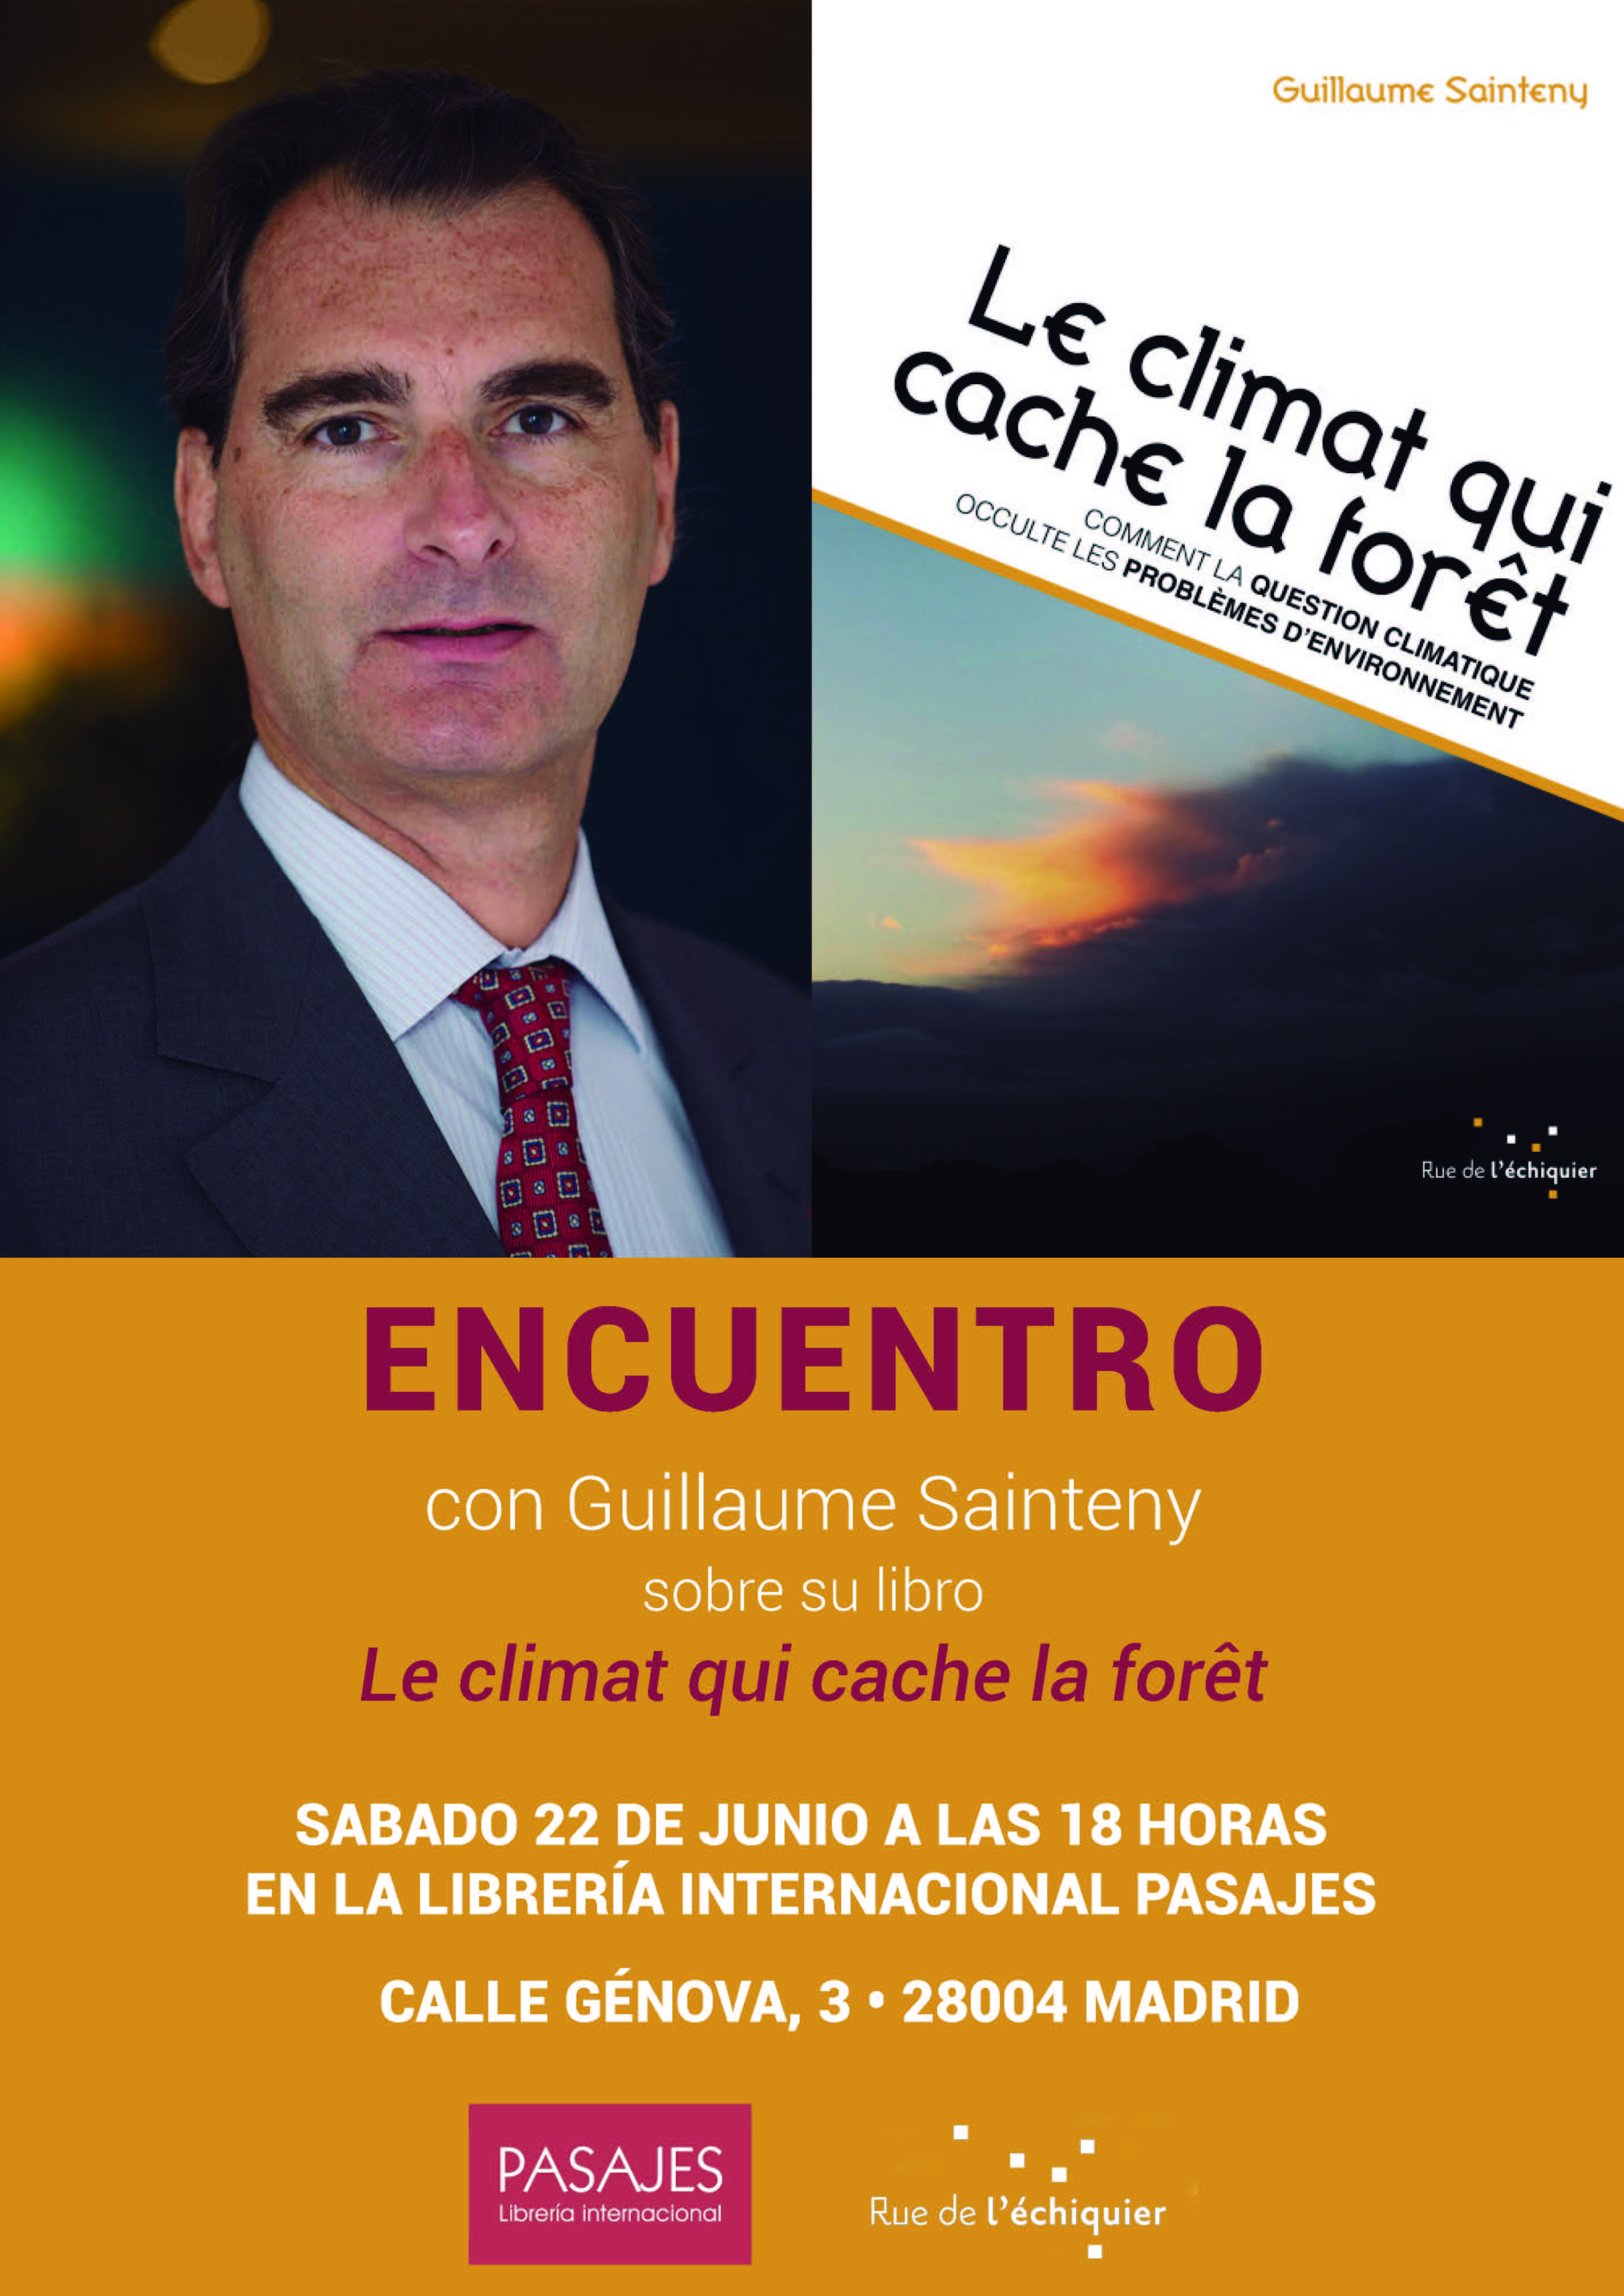 COLOQUIO - Le climat qui cache la forêt, con Guillaume Sainteny